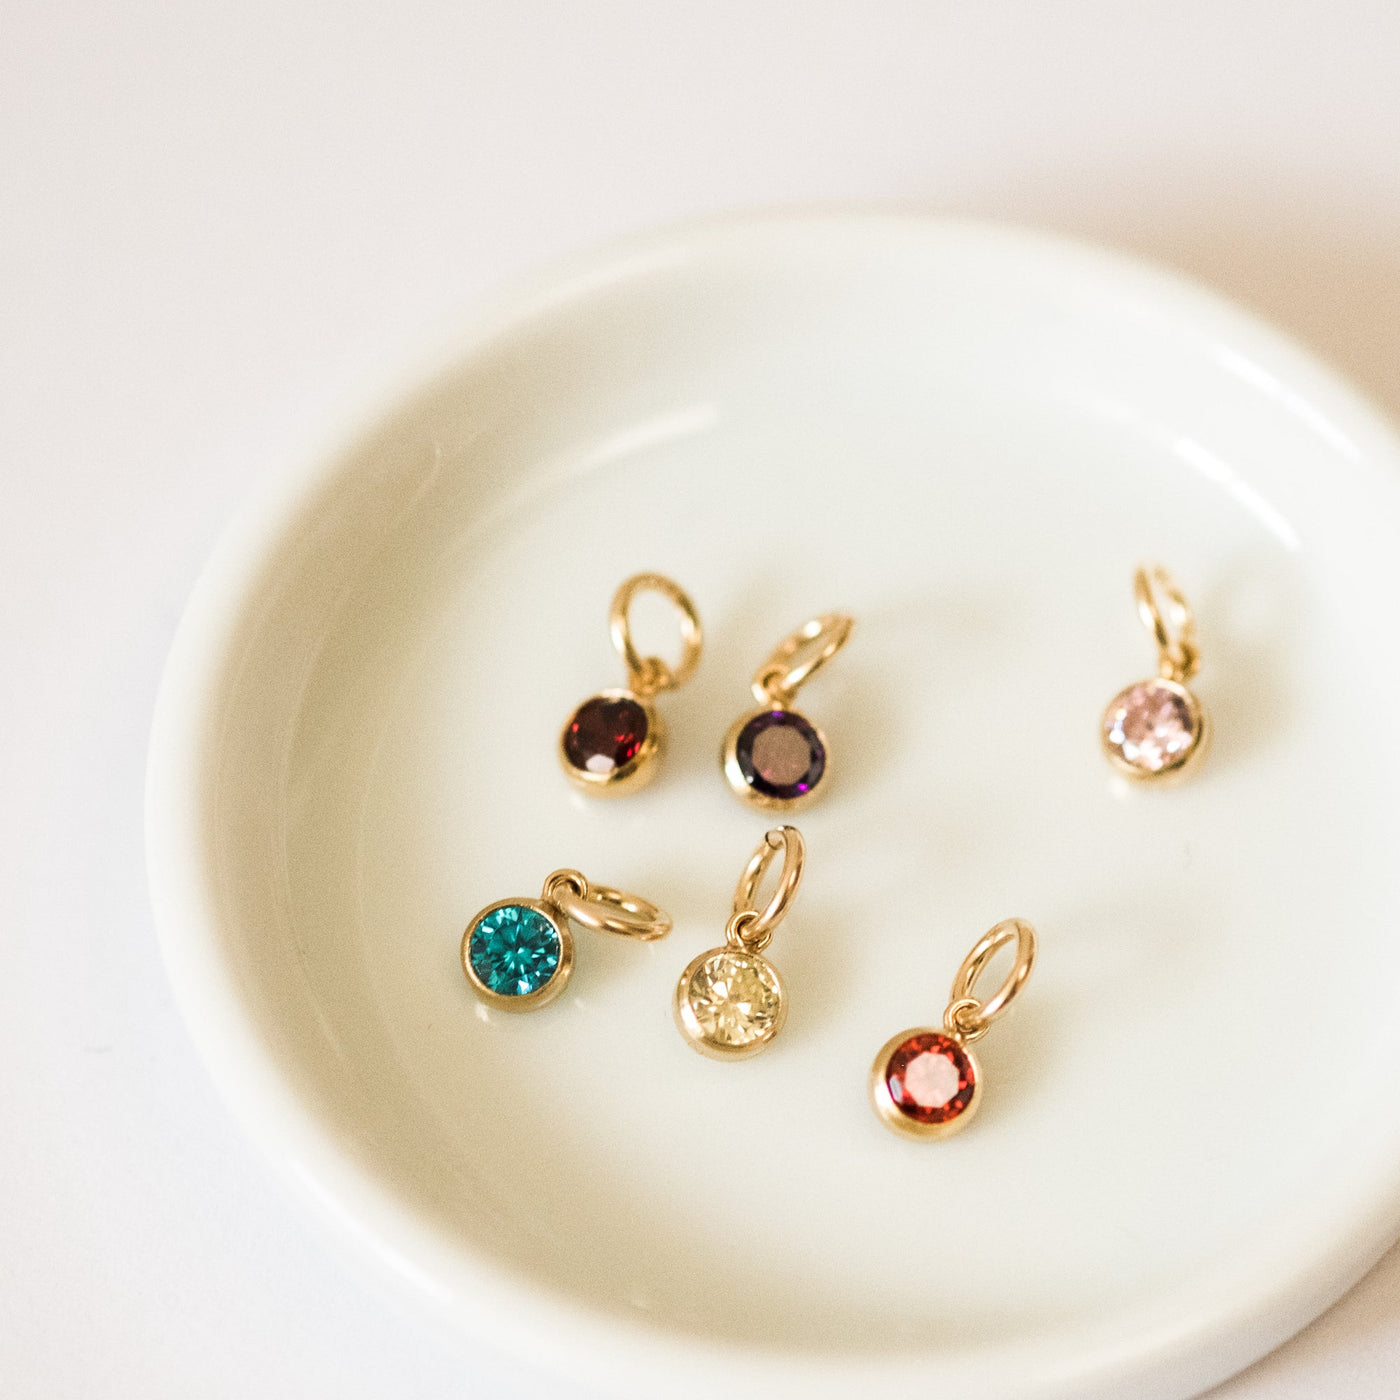 October Birthstone Charm (Tourmaline) | Simple & Dainty Jewelry